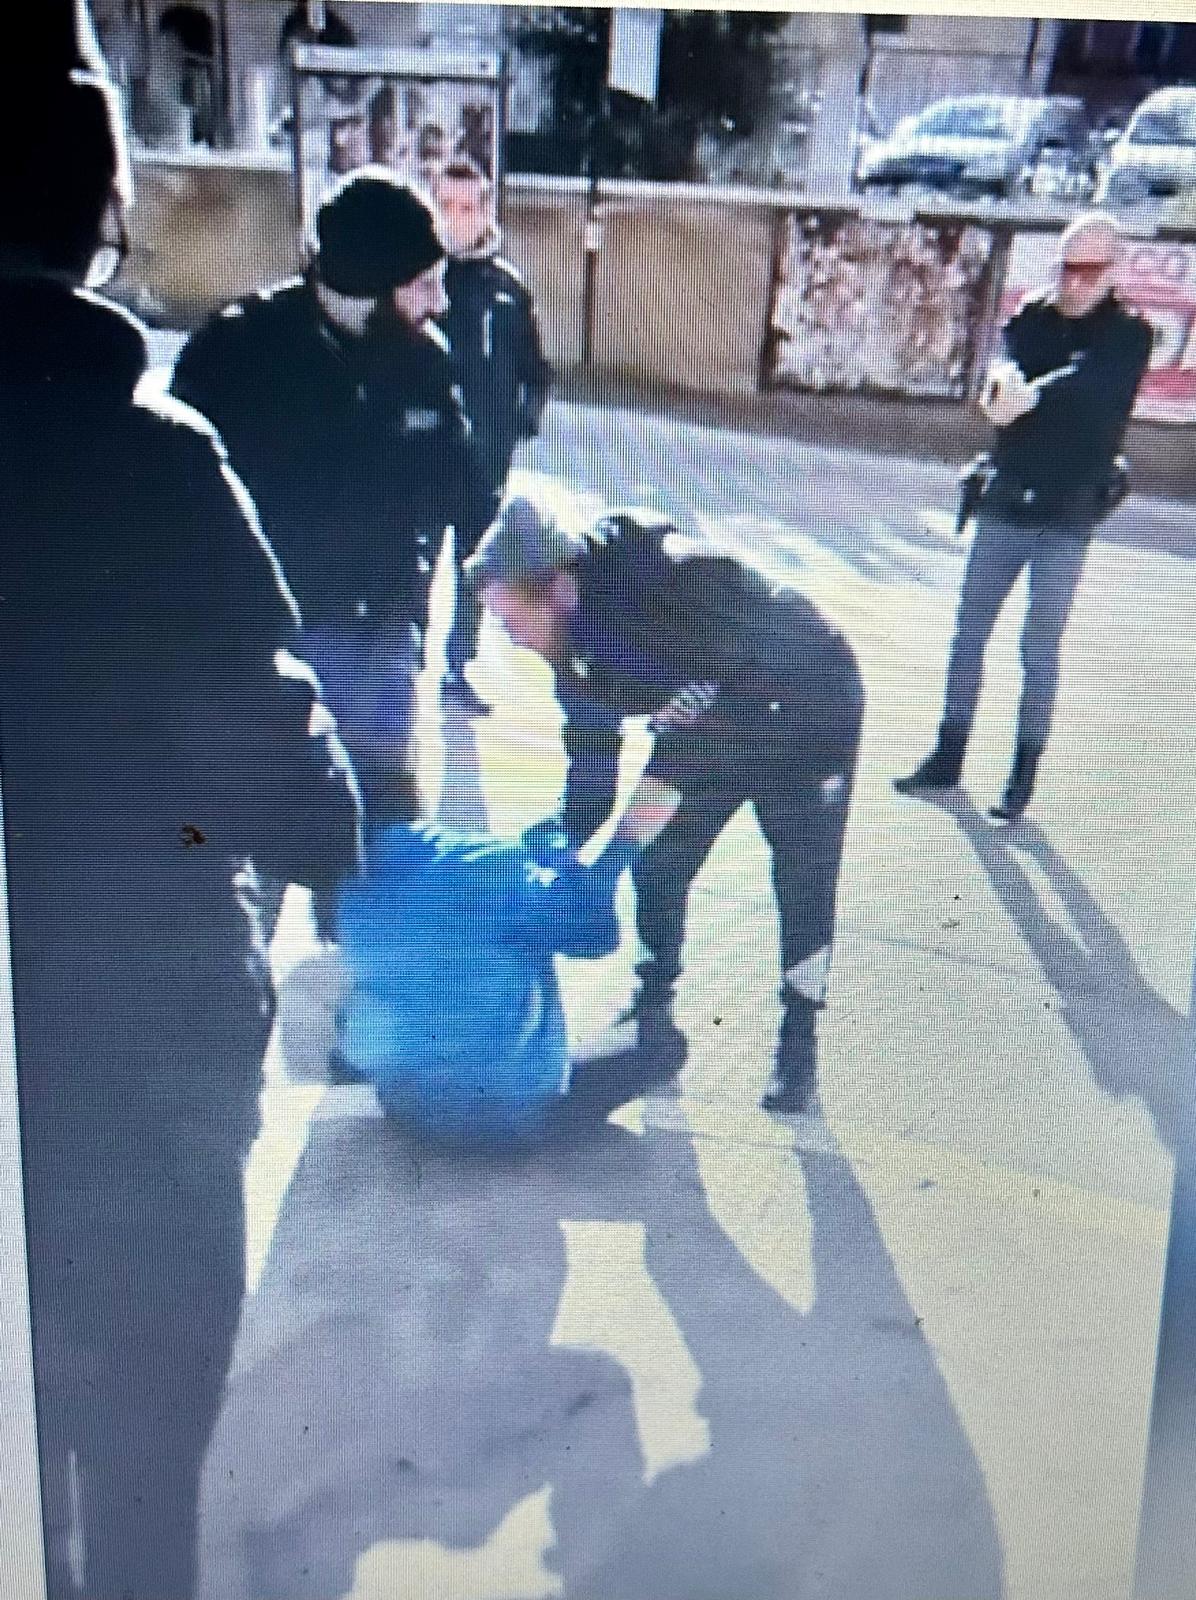 Agenti della Polizia utilizzano il taser e ammanettano un commerciante, il video diventa virale